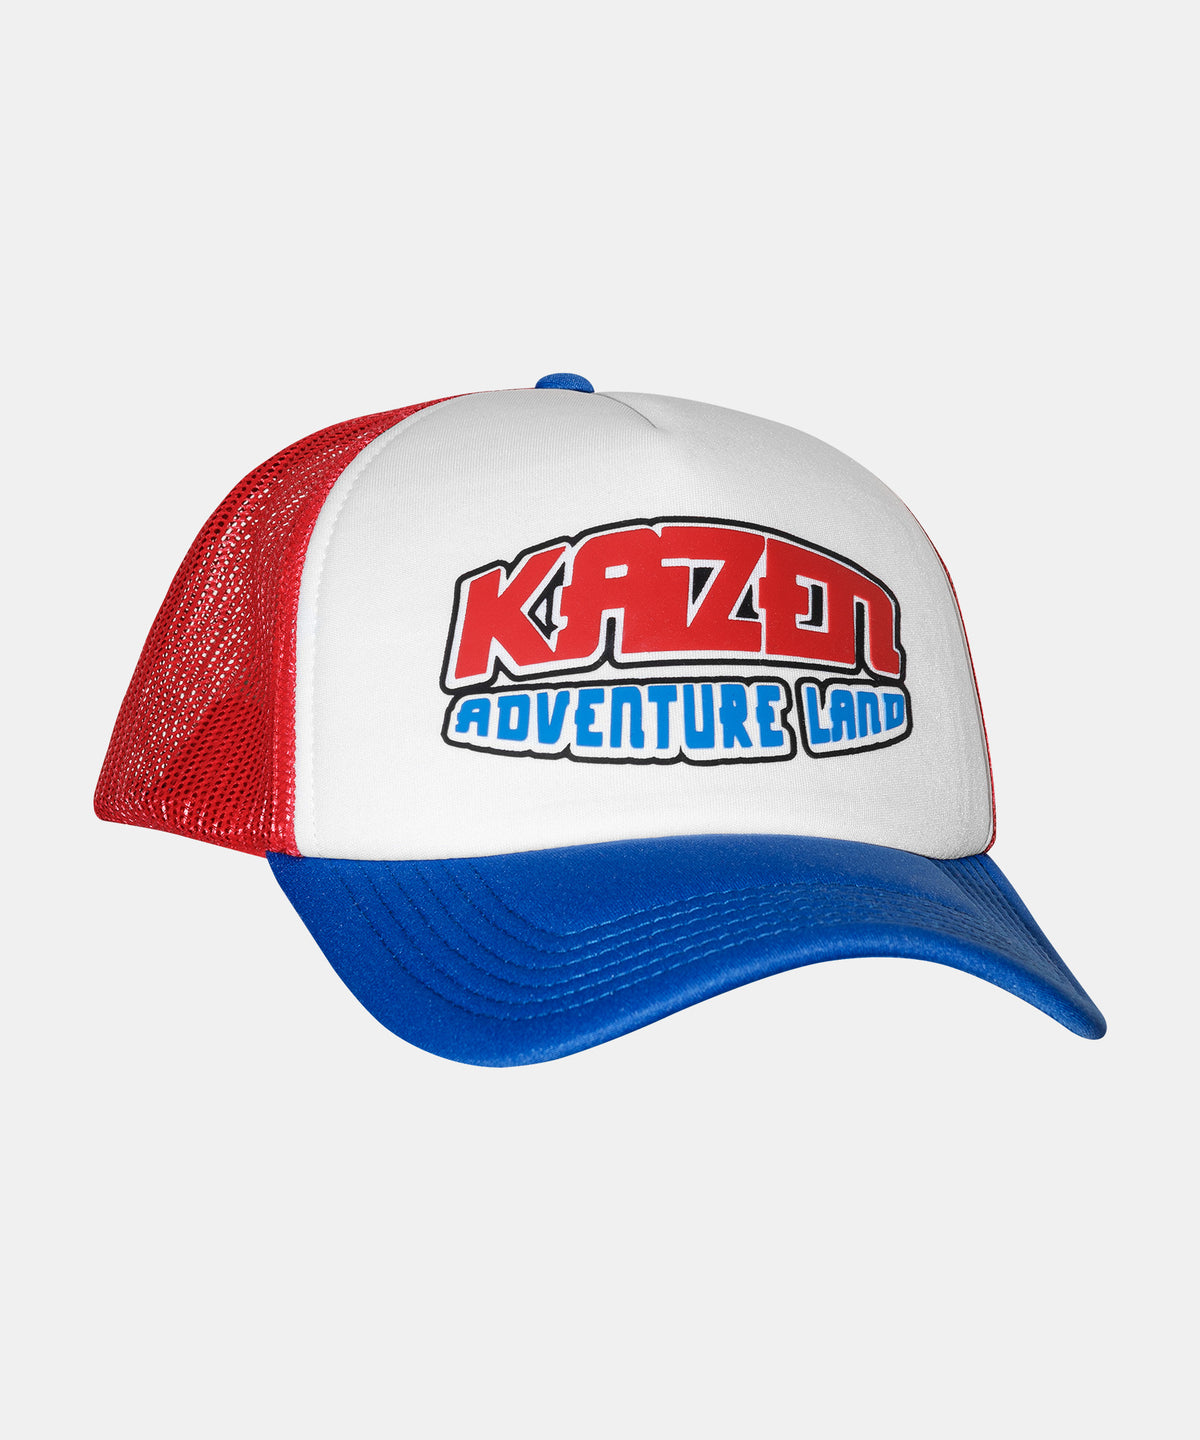 Kaizen - Adventureland Trucker Hat